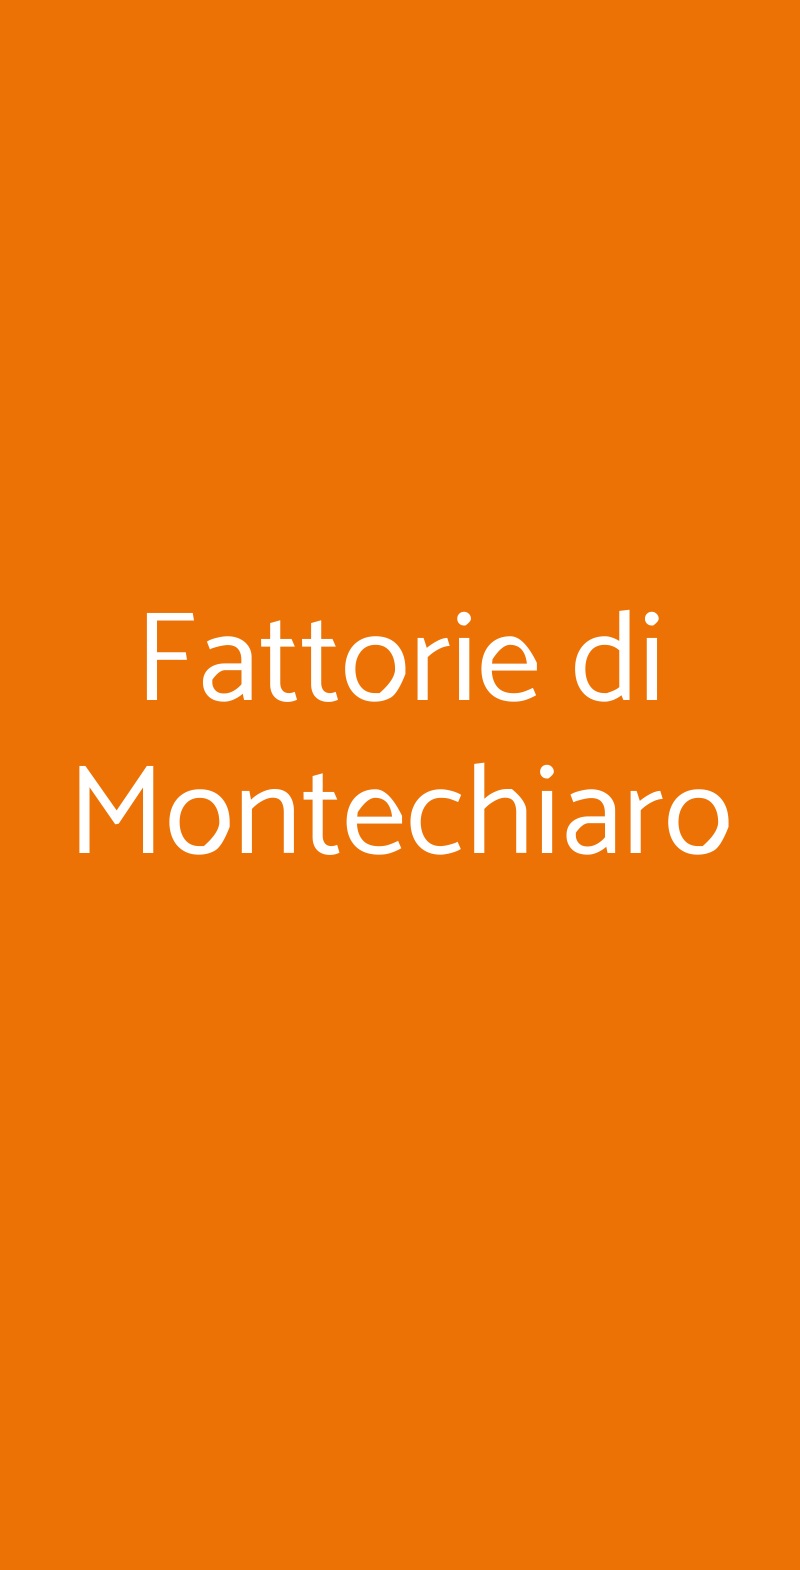 Fattorie di Montechiaro Sasso Marconi menù 1 pagina